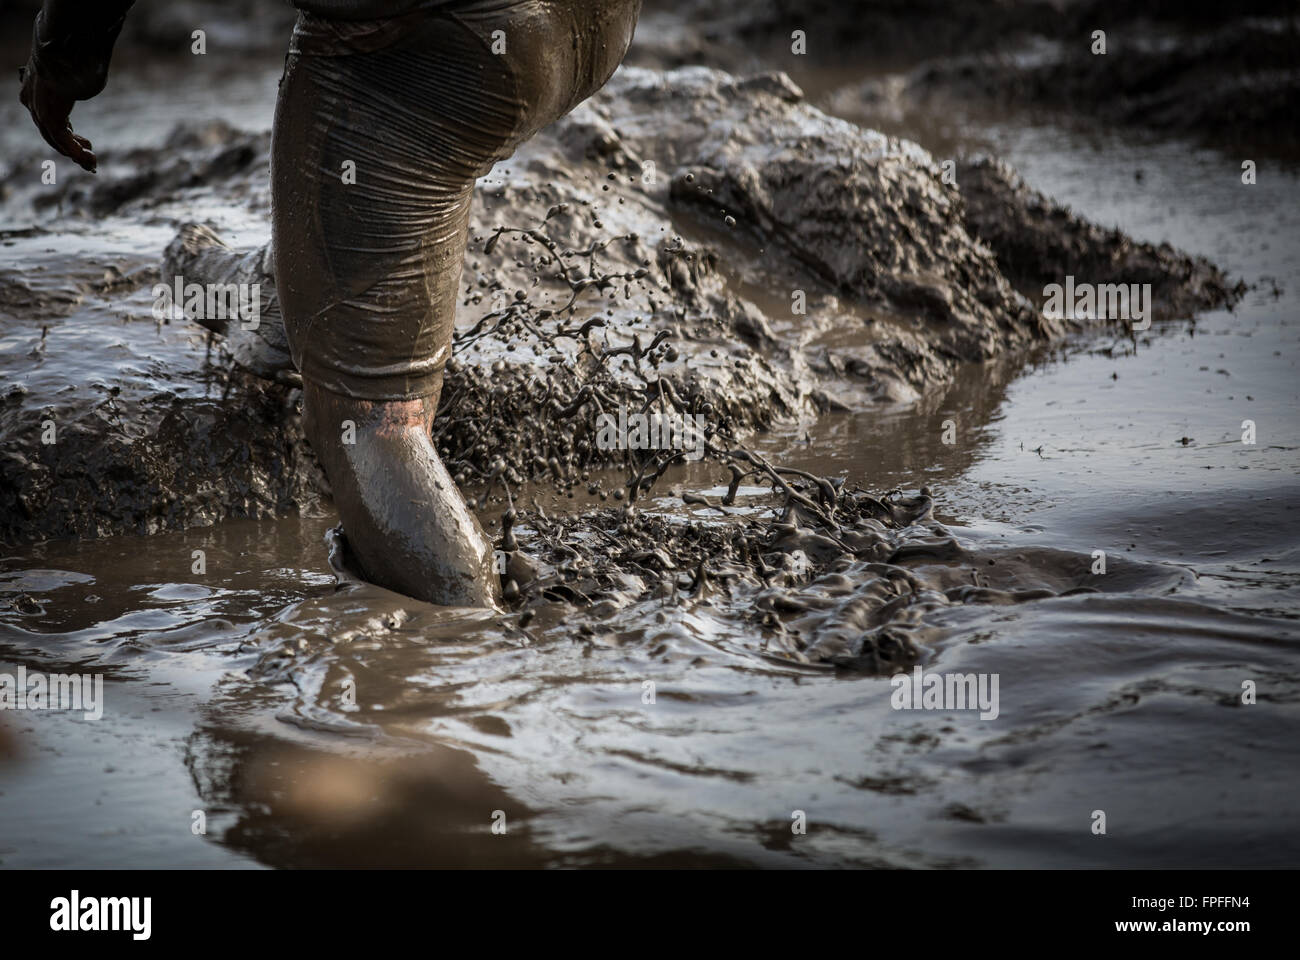 Deep acqua fangosa con piedini schizzi e arrampicata fuori dal fango in una gara Foto Stock